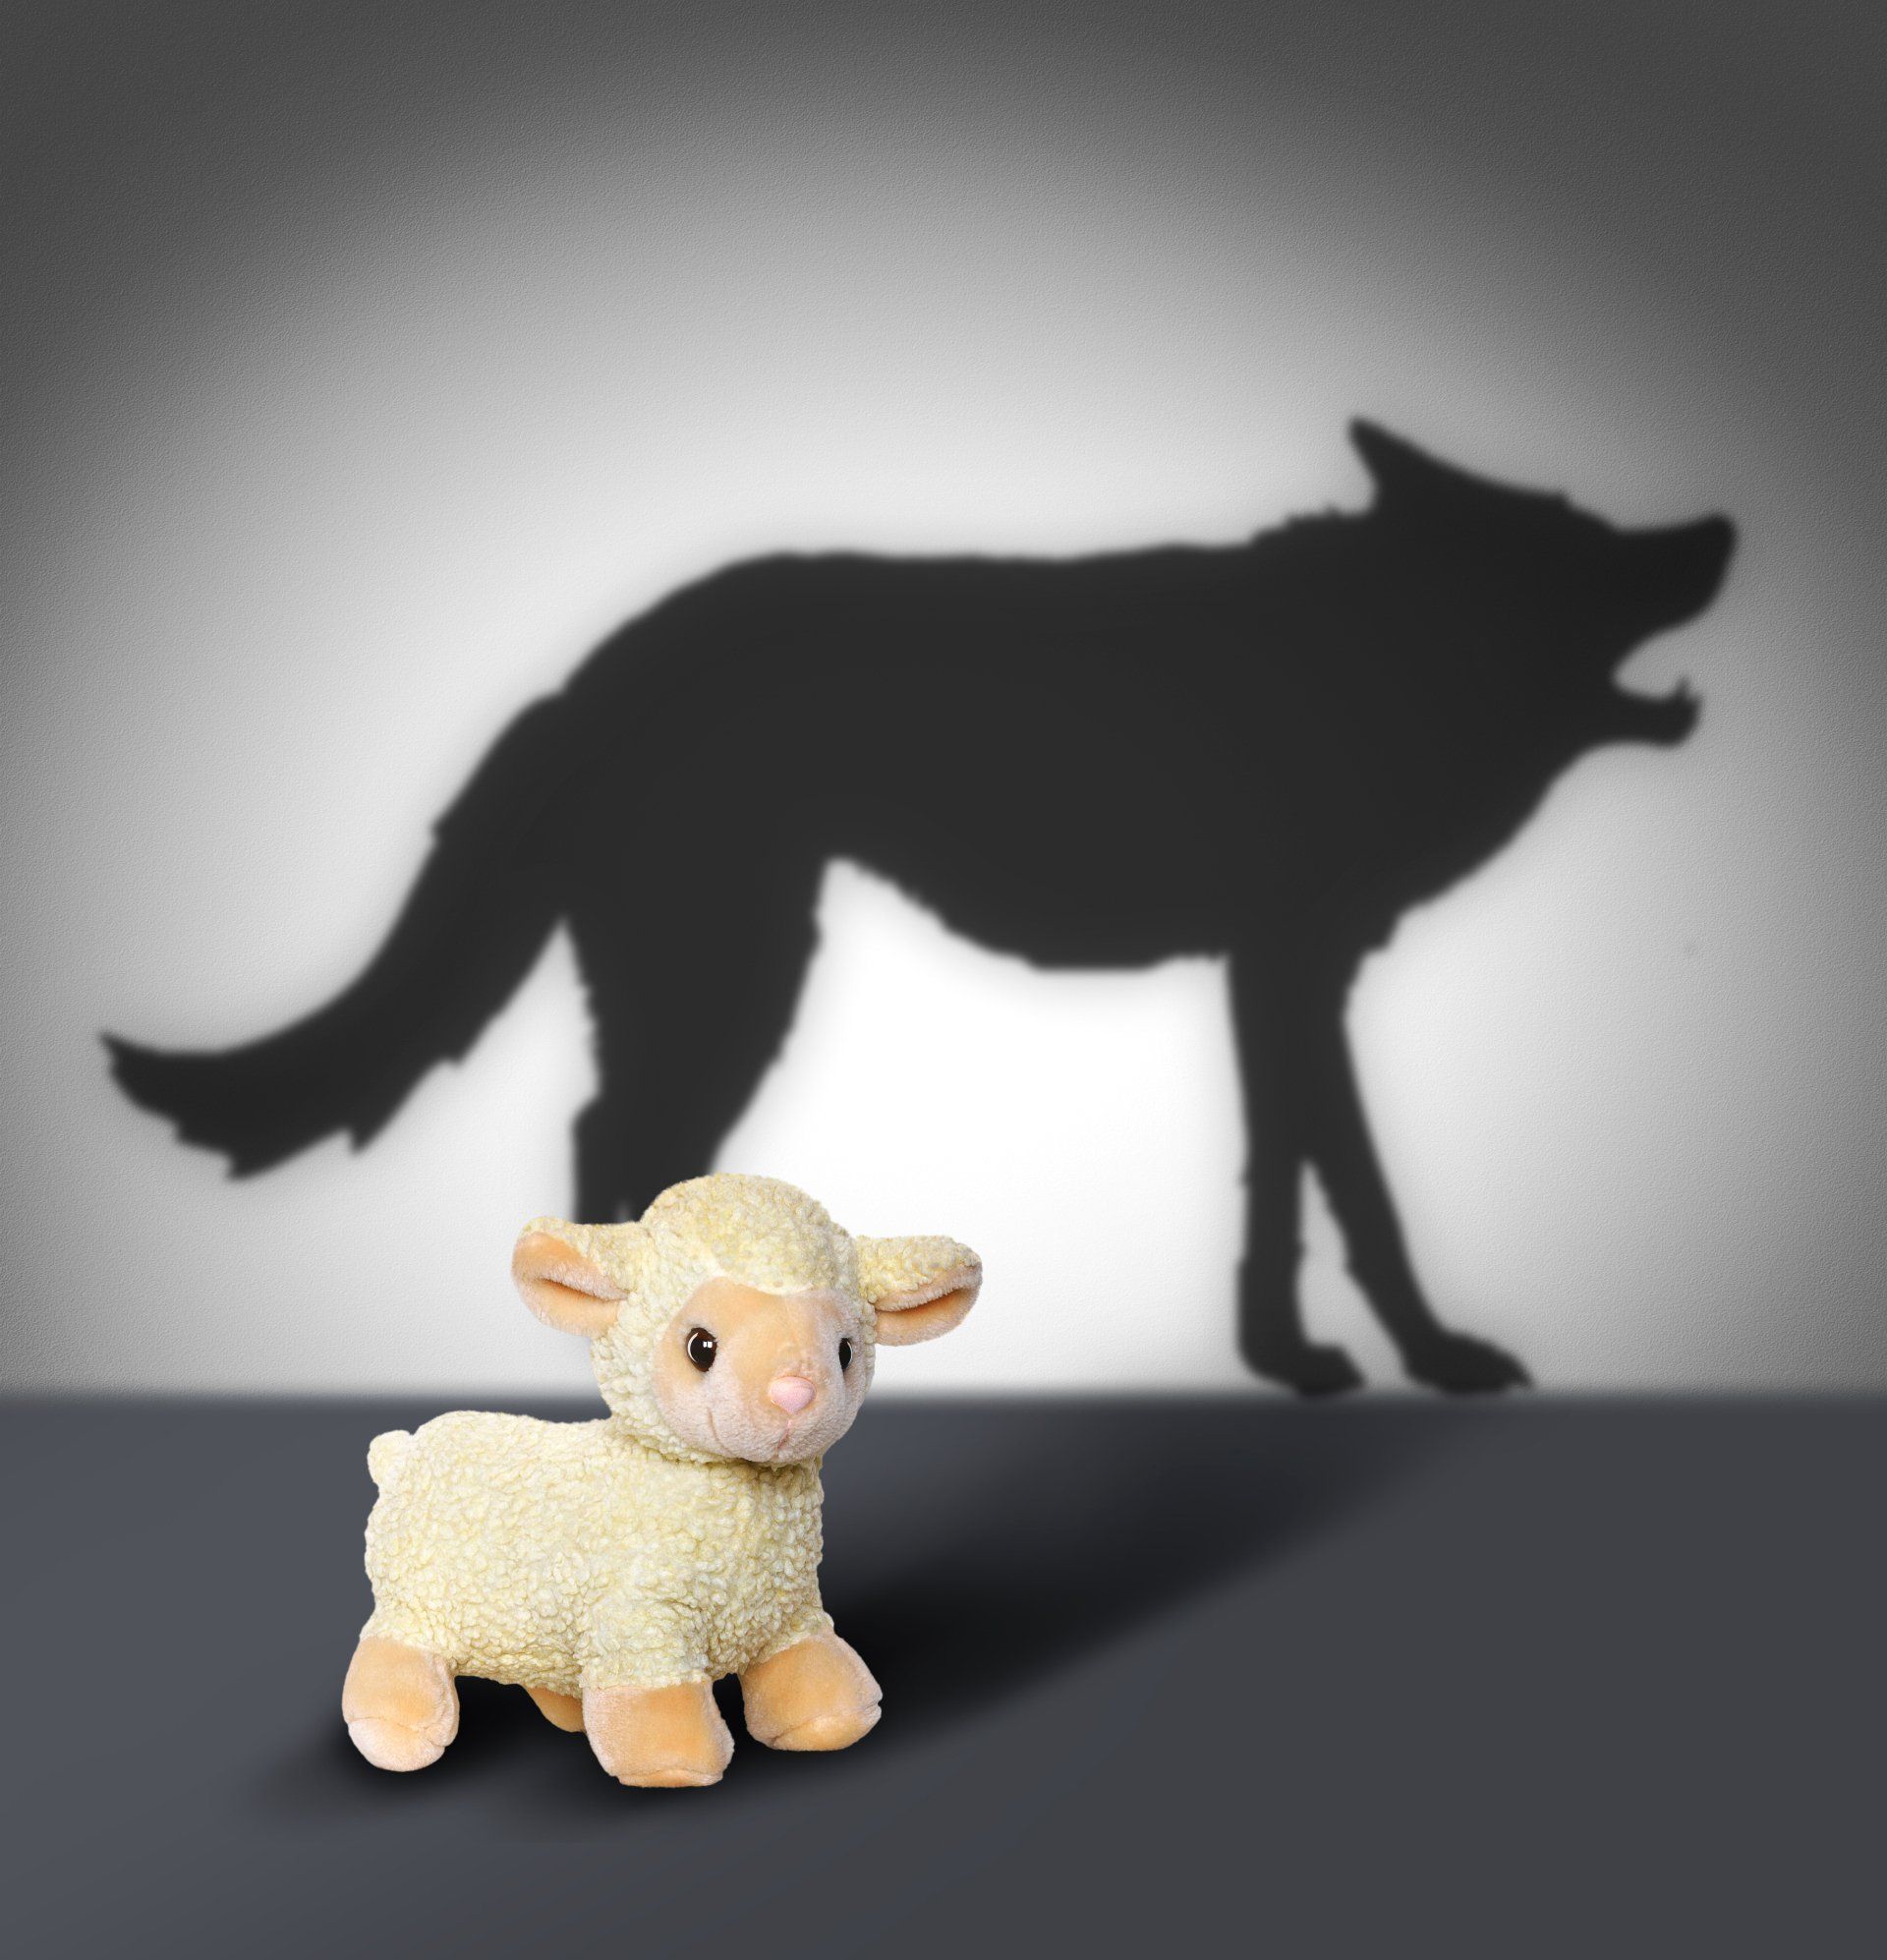 PTSS Voorbij-Integraal en holistisch herstel van PTSS en Trauma-Johan Reinhoudt-Sheep and Wolf Shadow-Concept Graphic